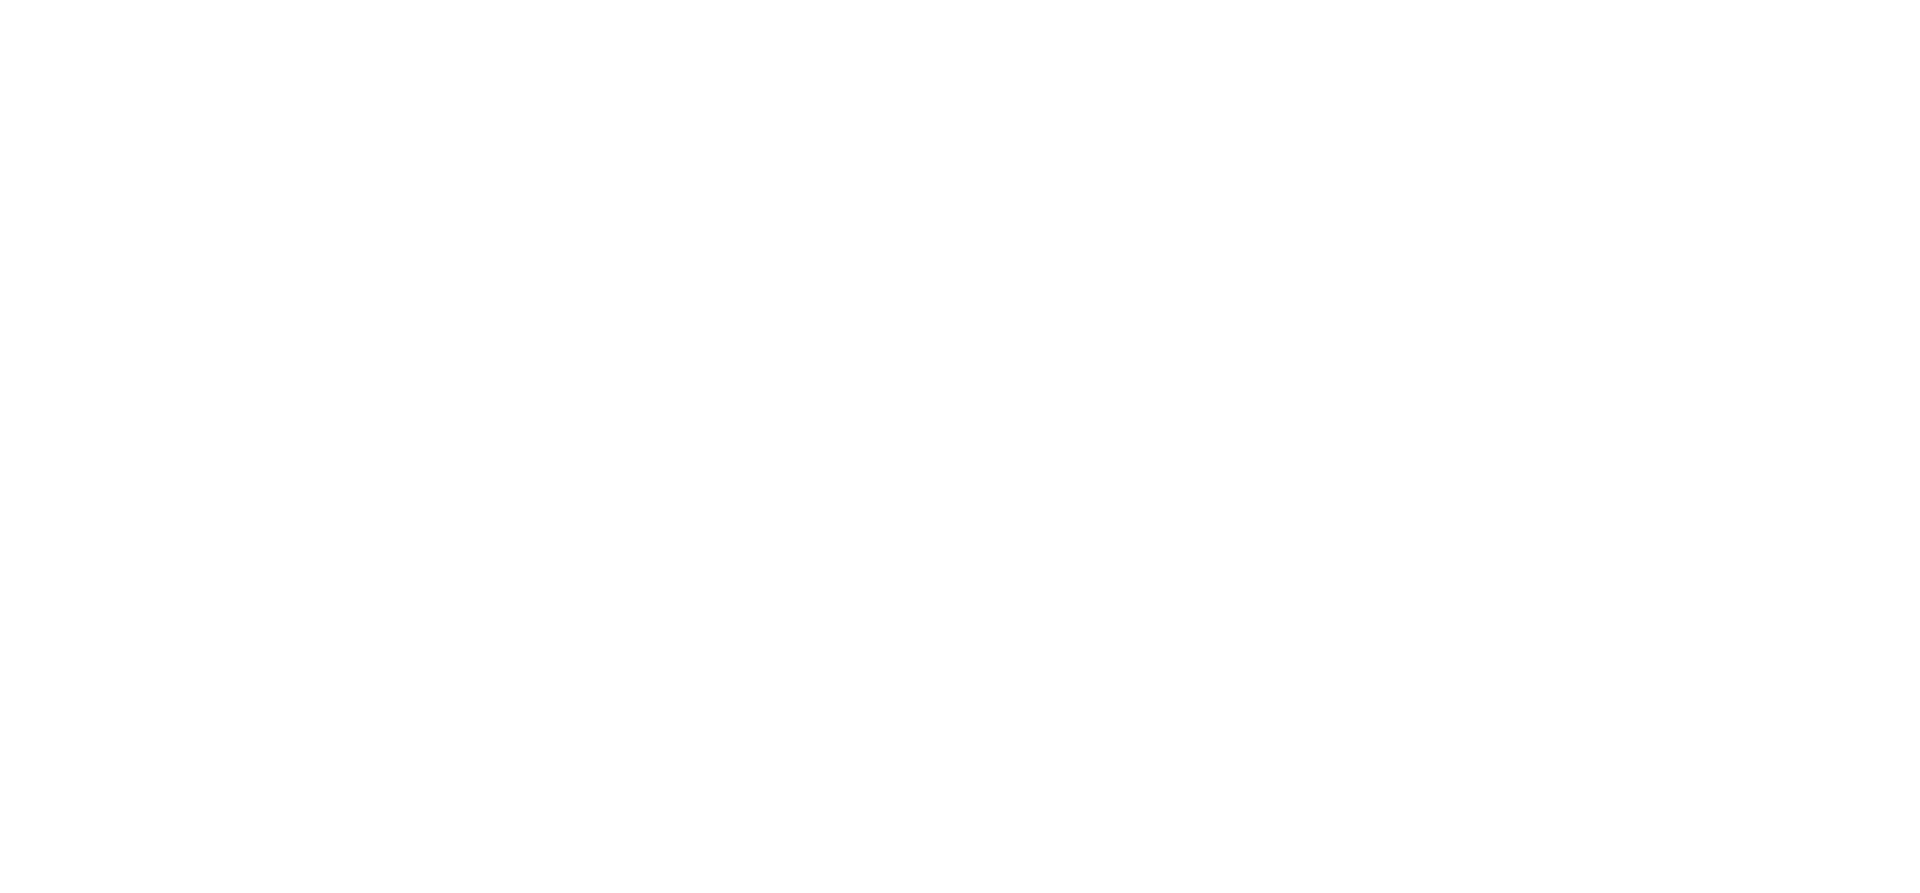 The Fishnett Plan